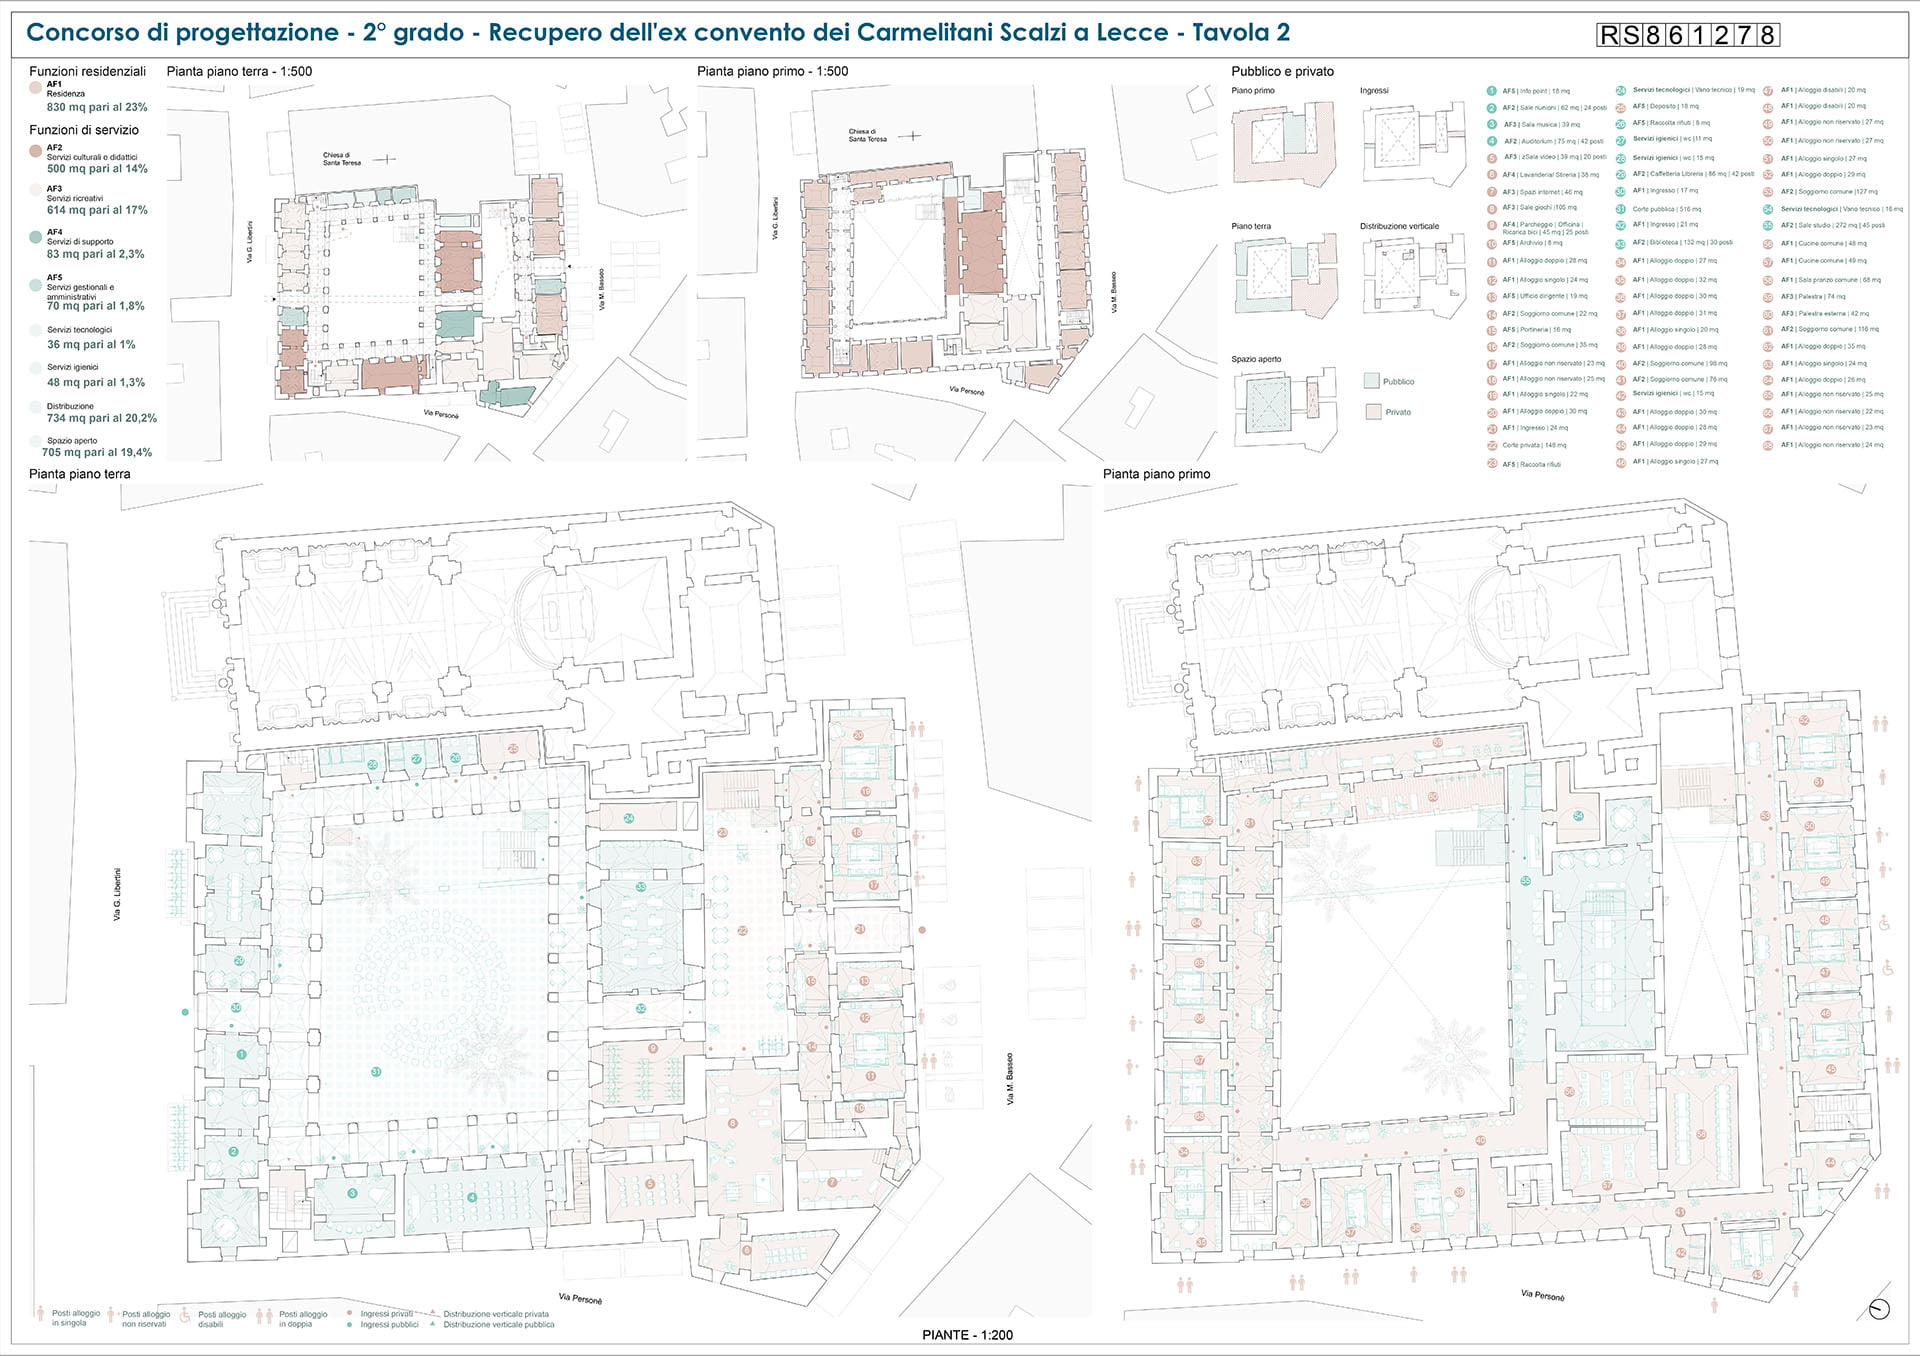 Ex convento Carmelitani Scalzi, Lecce: disegni della struttura per il concorso di progettazione (tavola 2)